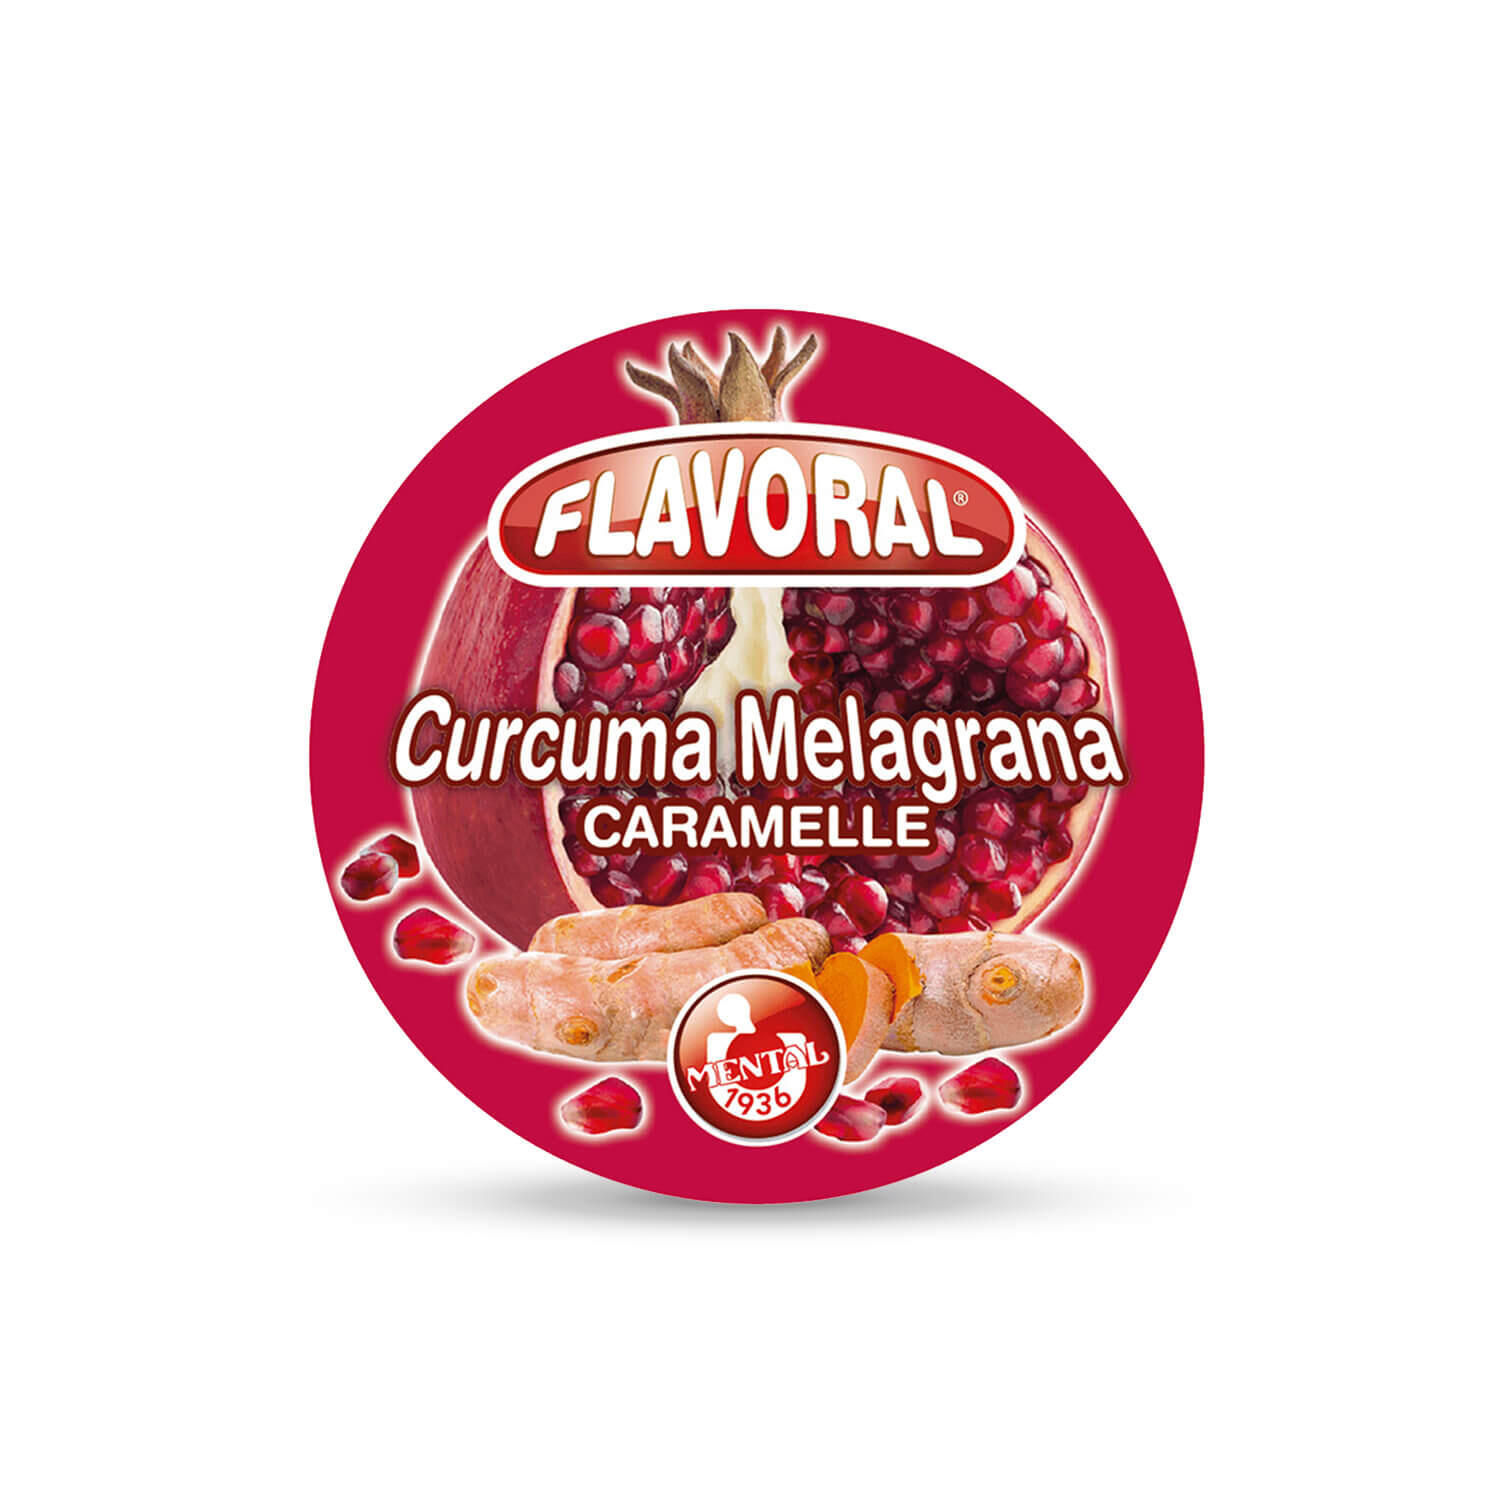 Flavoral Curcuma e Melagrana - Confezione da 16PZ - Flavoral